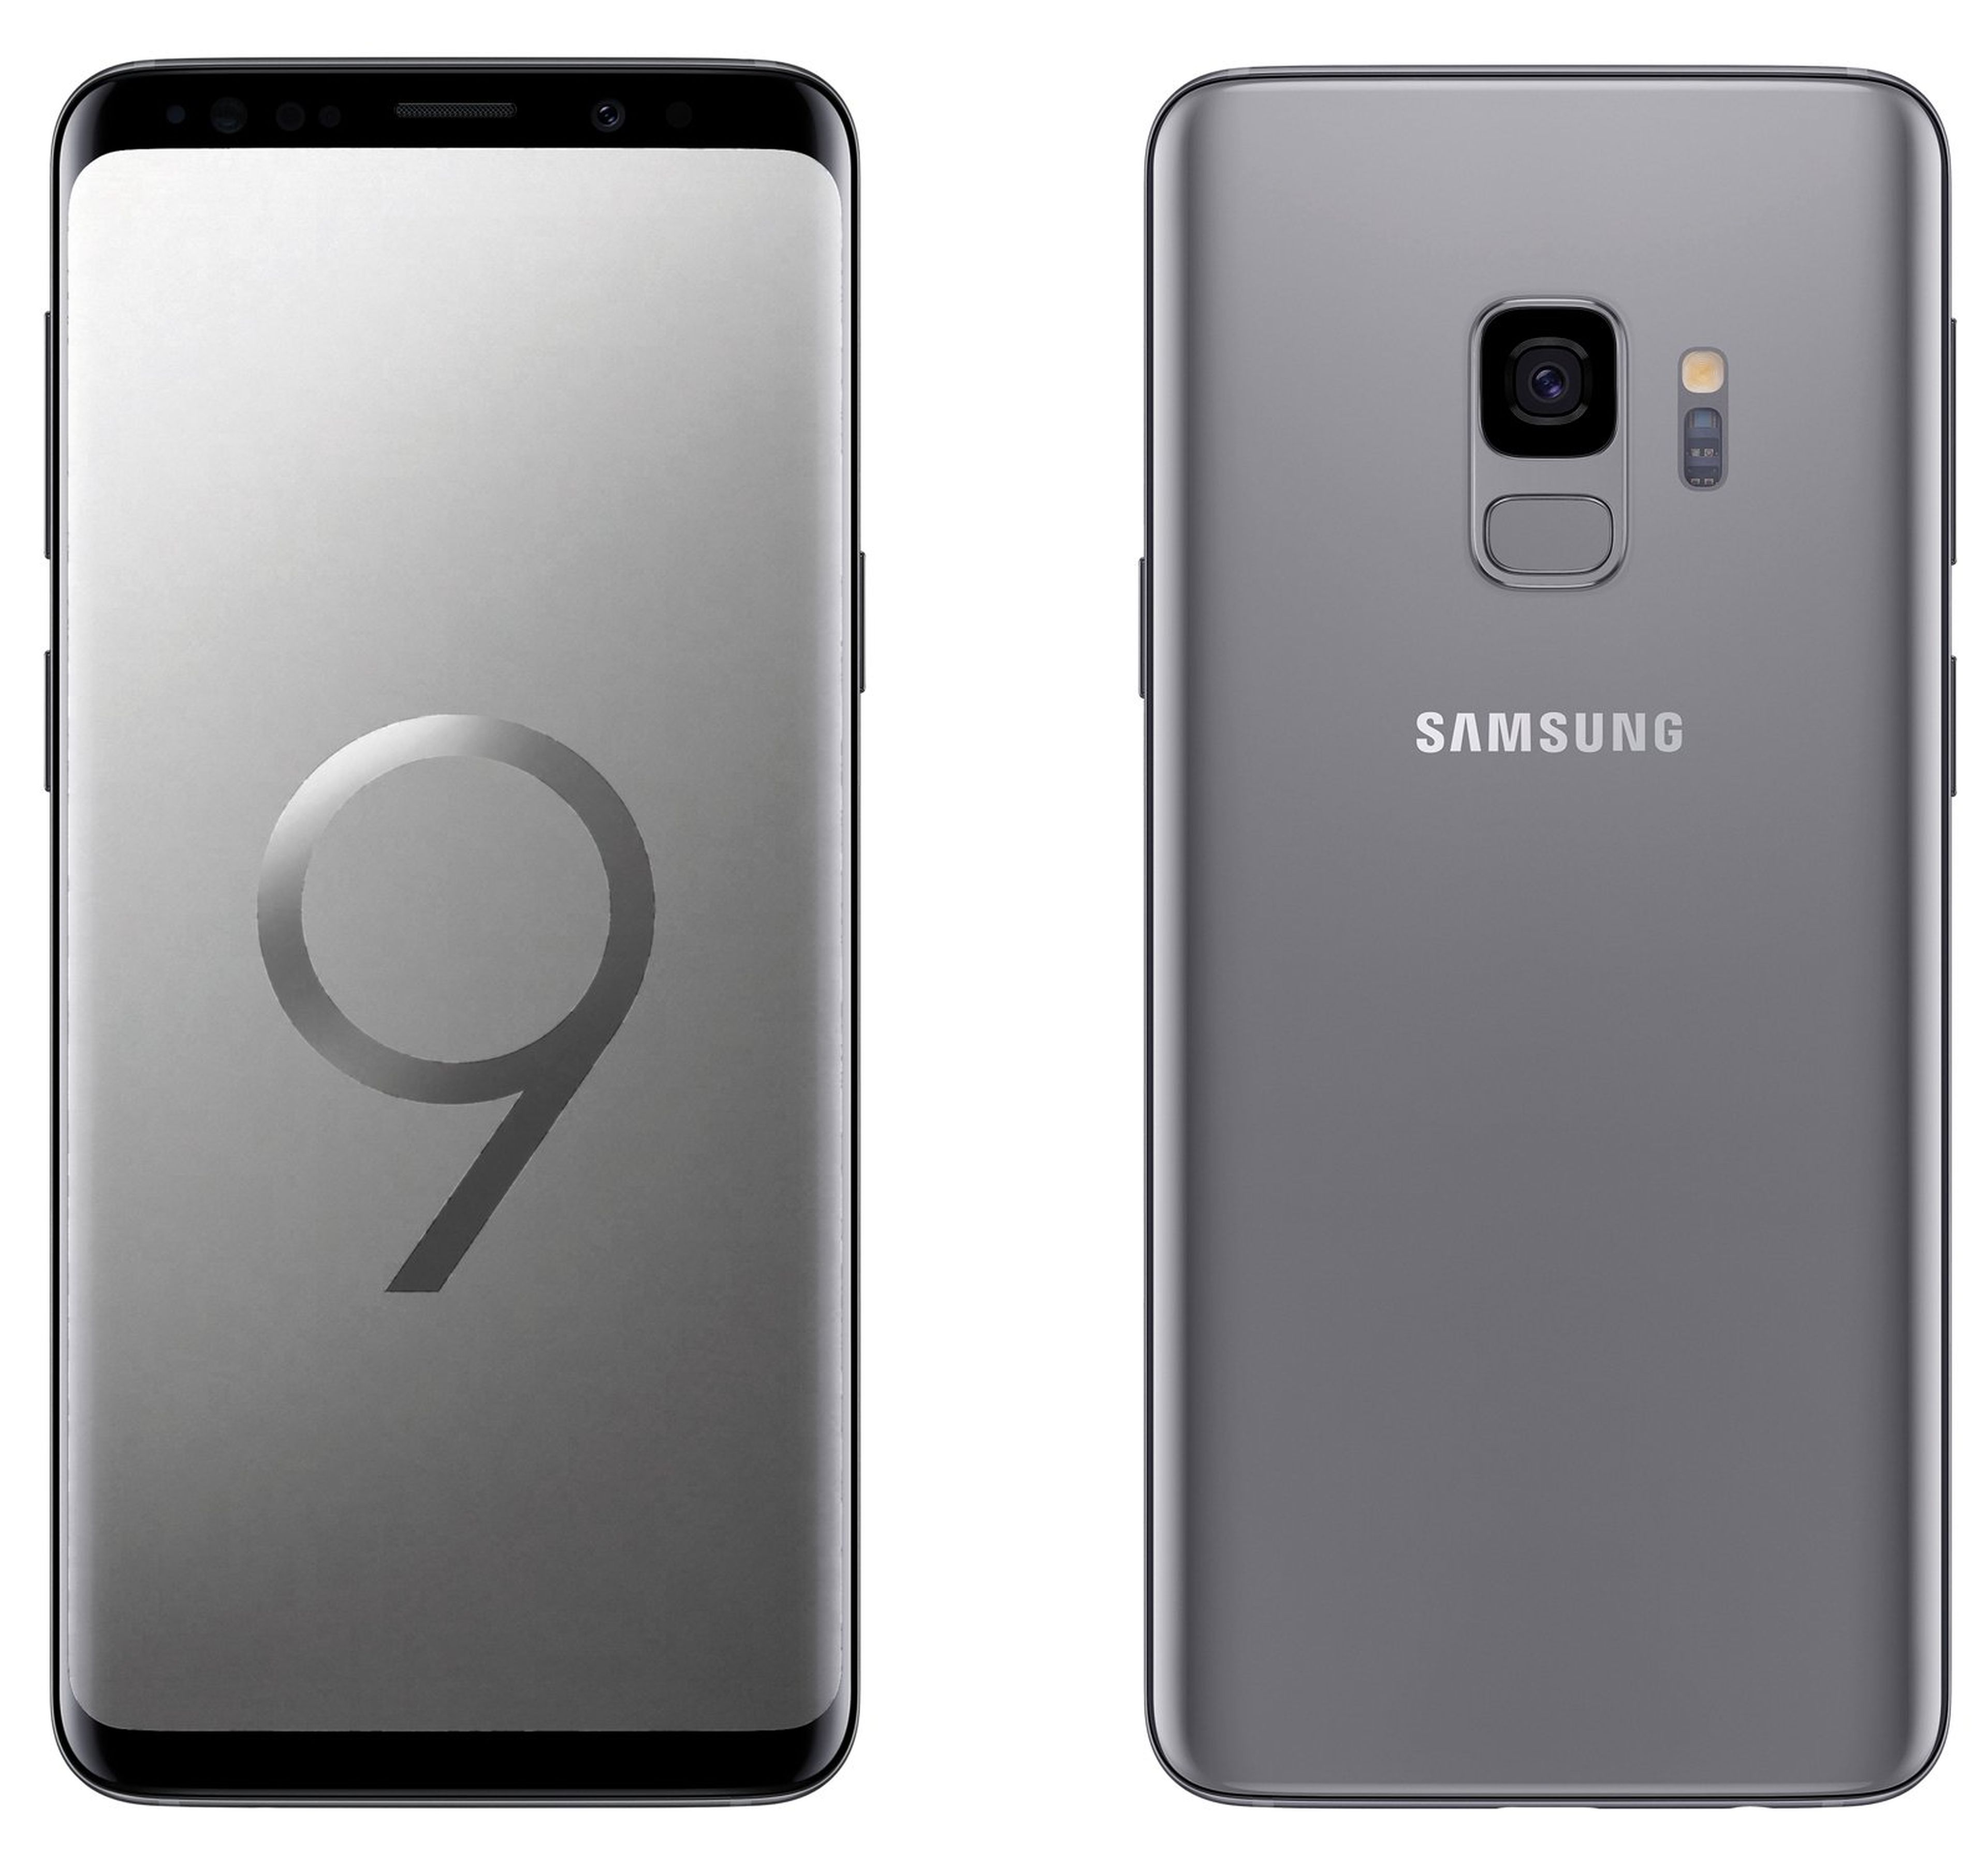 Lo que esperamos de los nuevos Samsung Galaxy S9 y S9 Plus